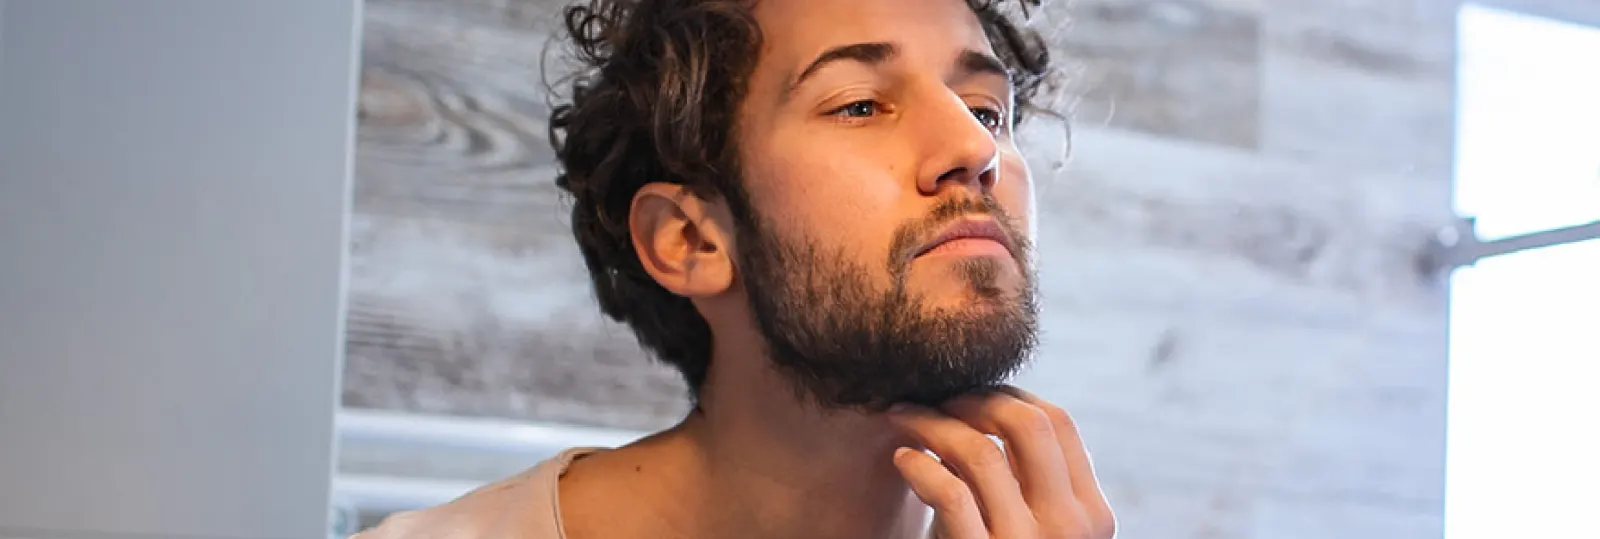 Tout ce que vous devez savoir sur les barbes au cou